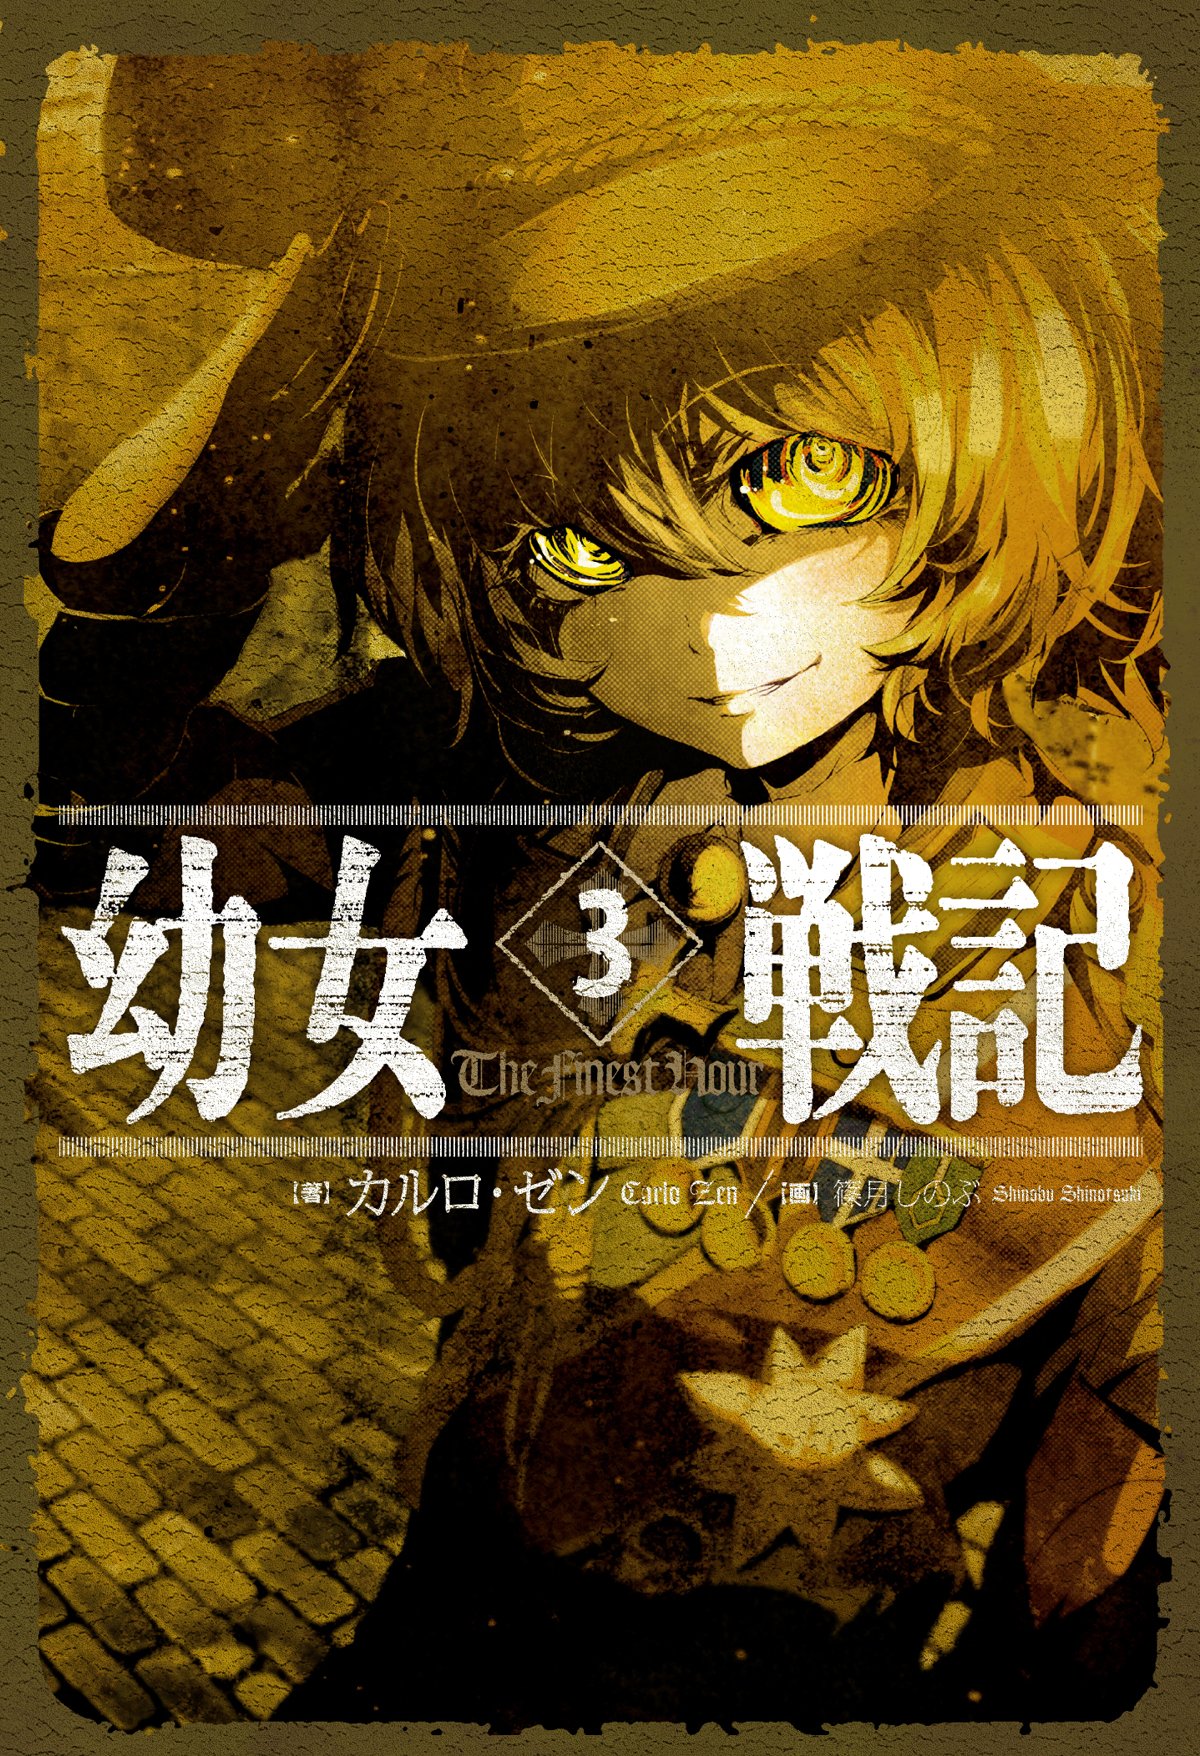 youjo senki light novel pdf 4shared